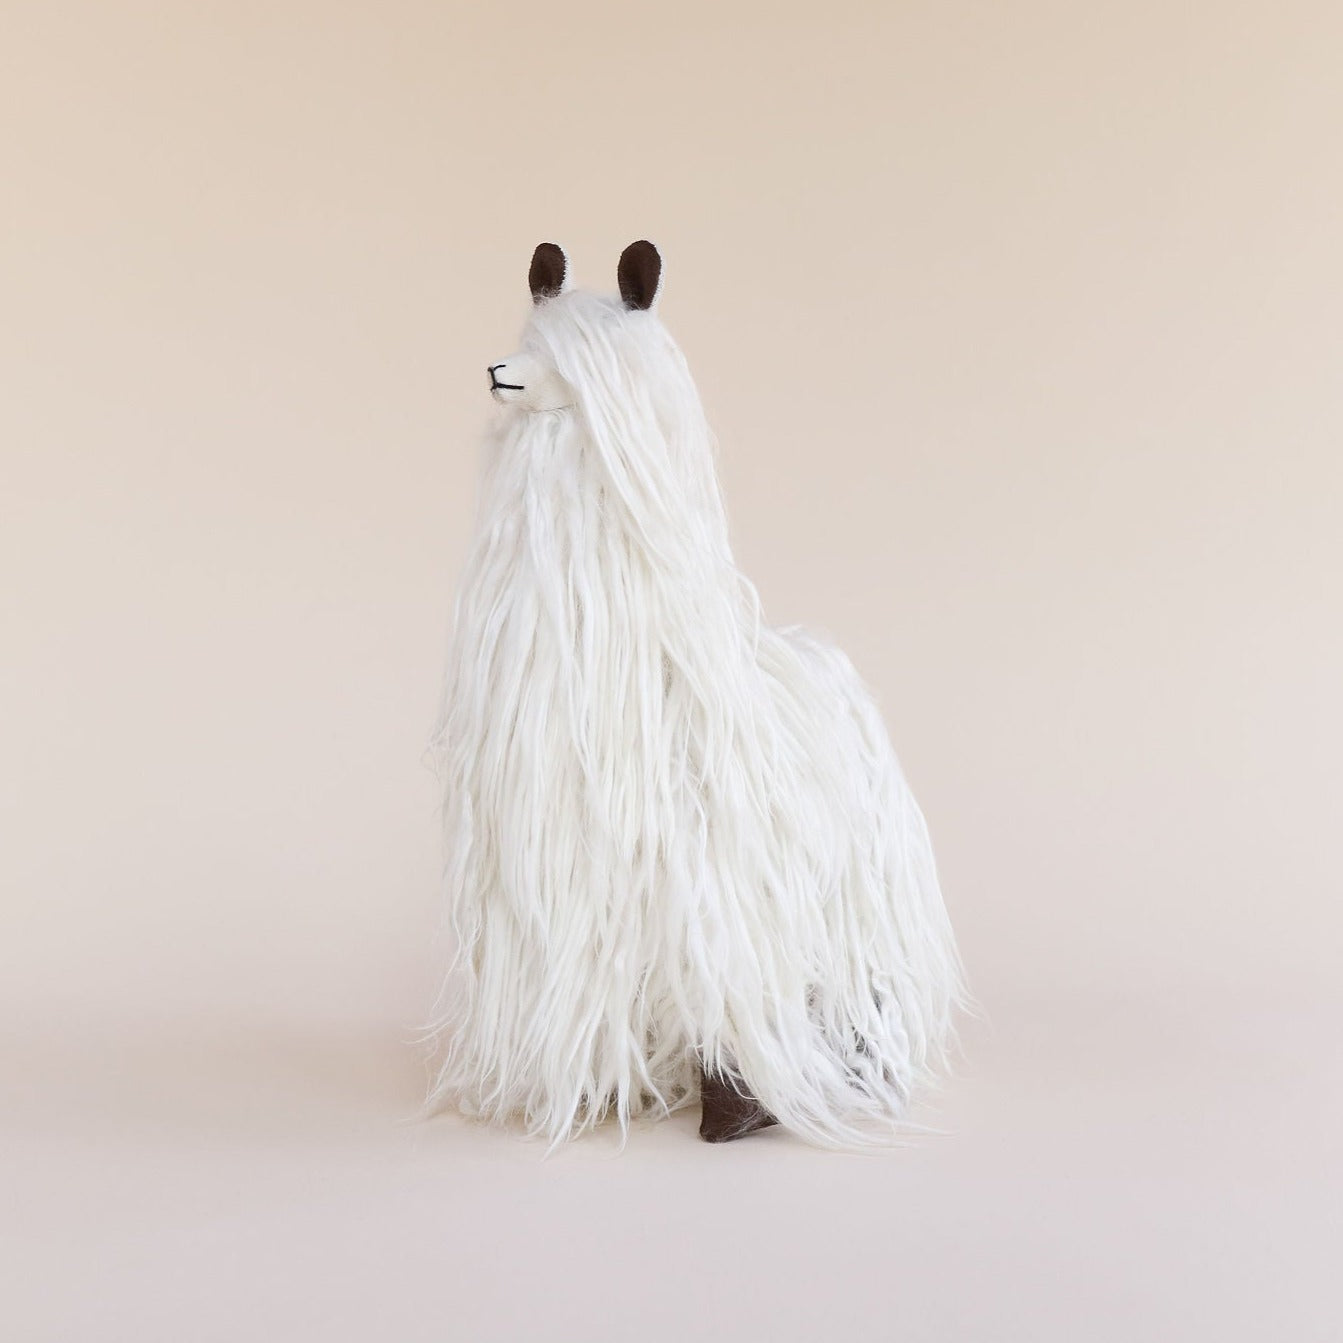 suri alpaca medium soft toy white#colour_white